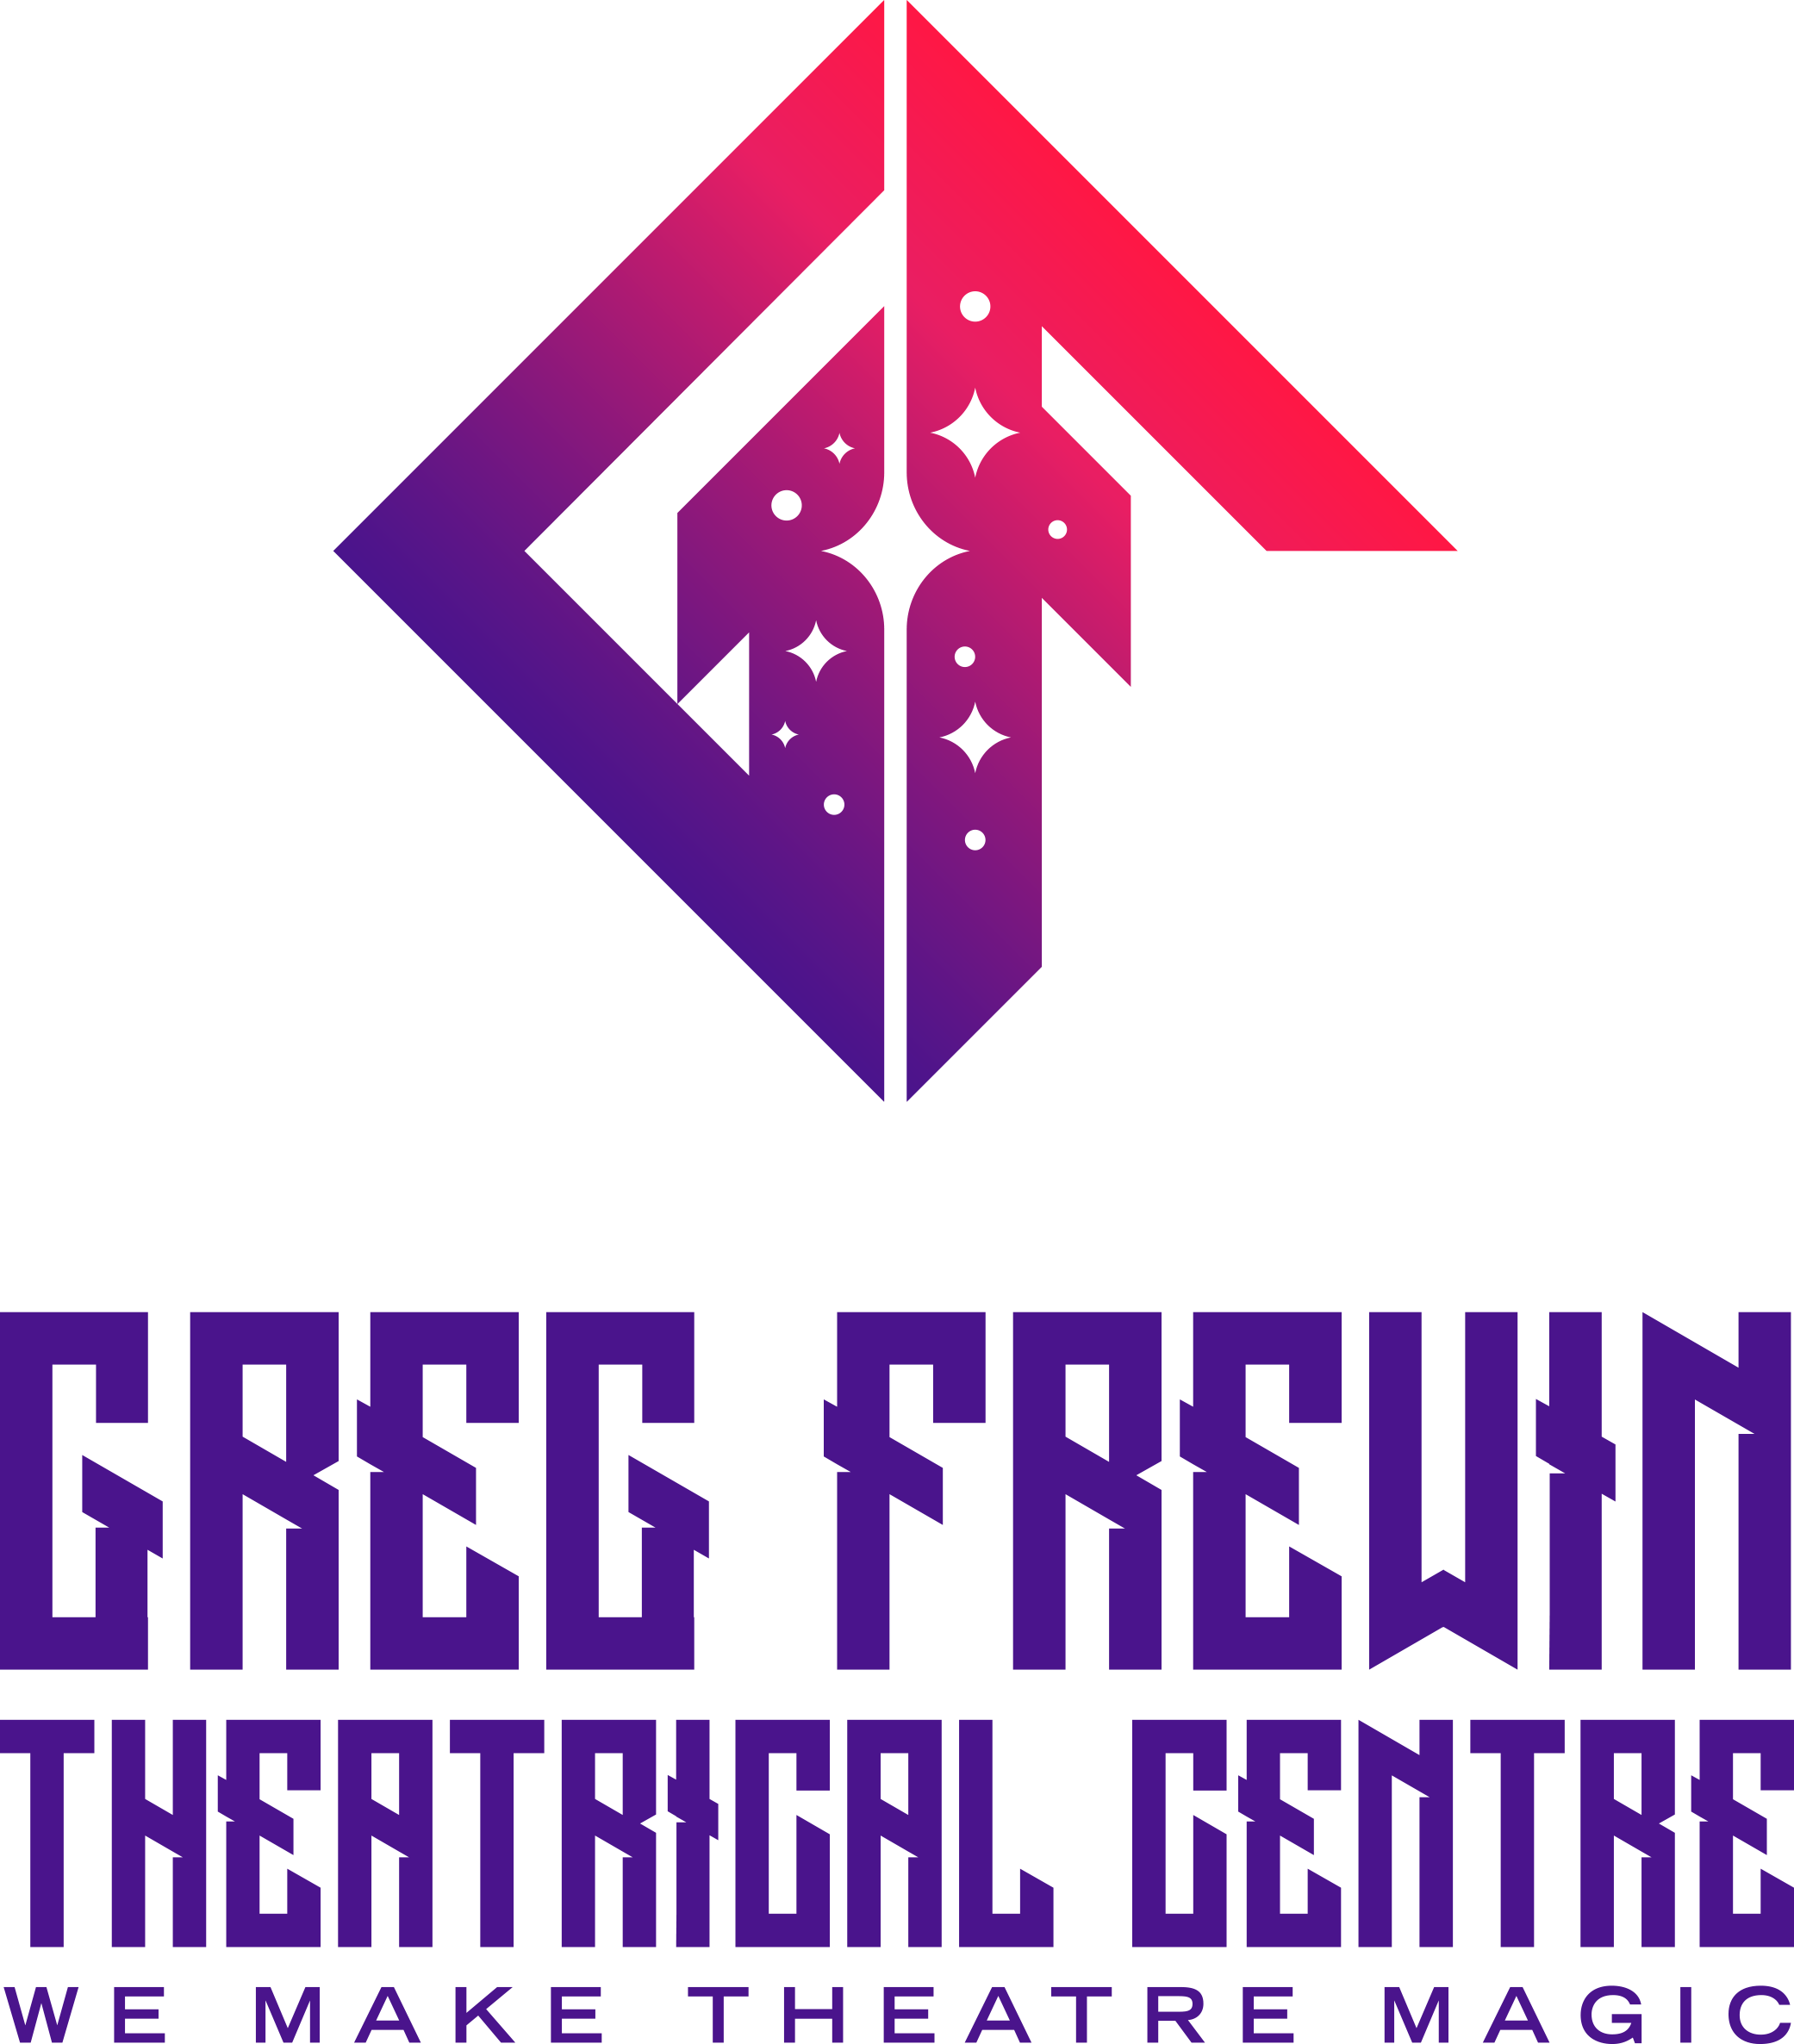 Greg-Frewin-01 centre fixed